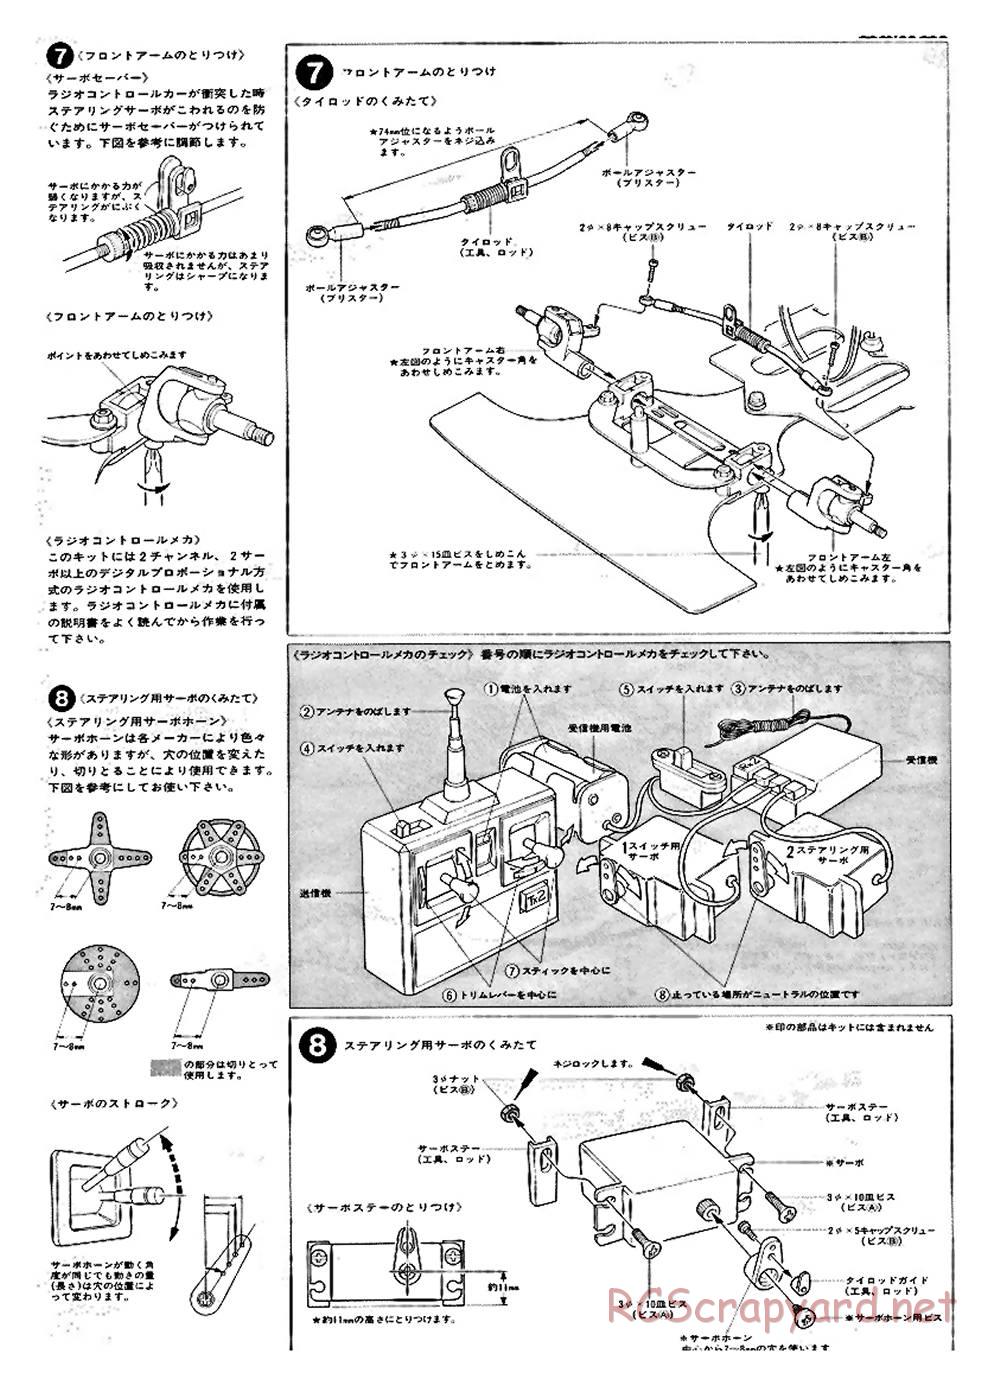 Tamiya - Ford C100 - RM MK.4 - 58033 - Manual - Page 5